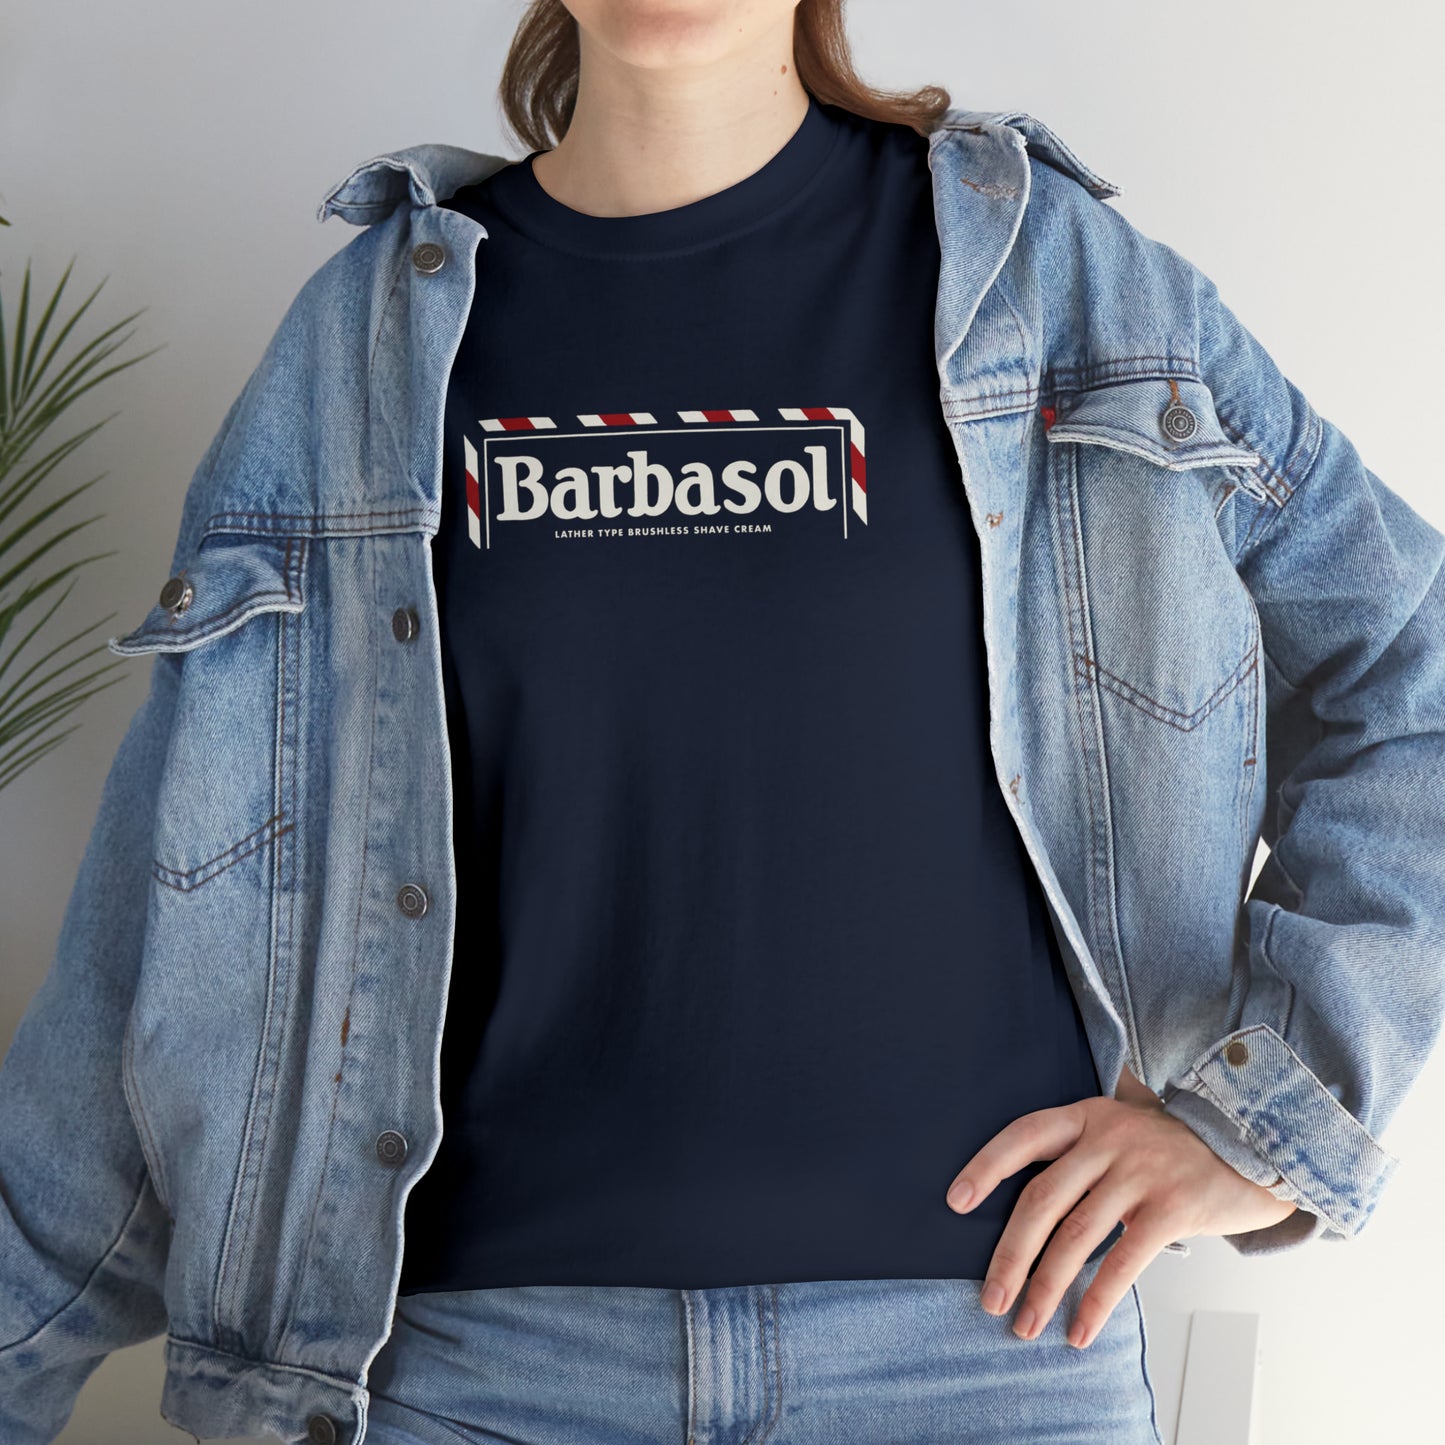 Barbasol T-Shirt